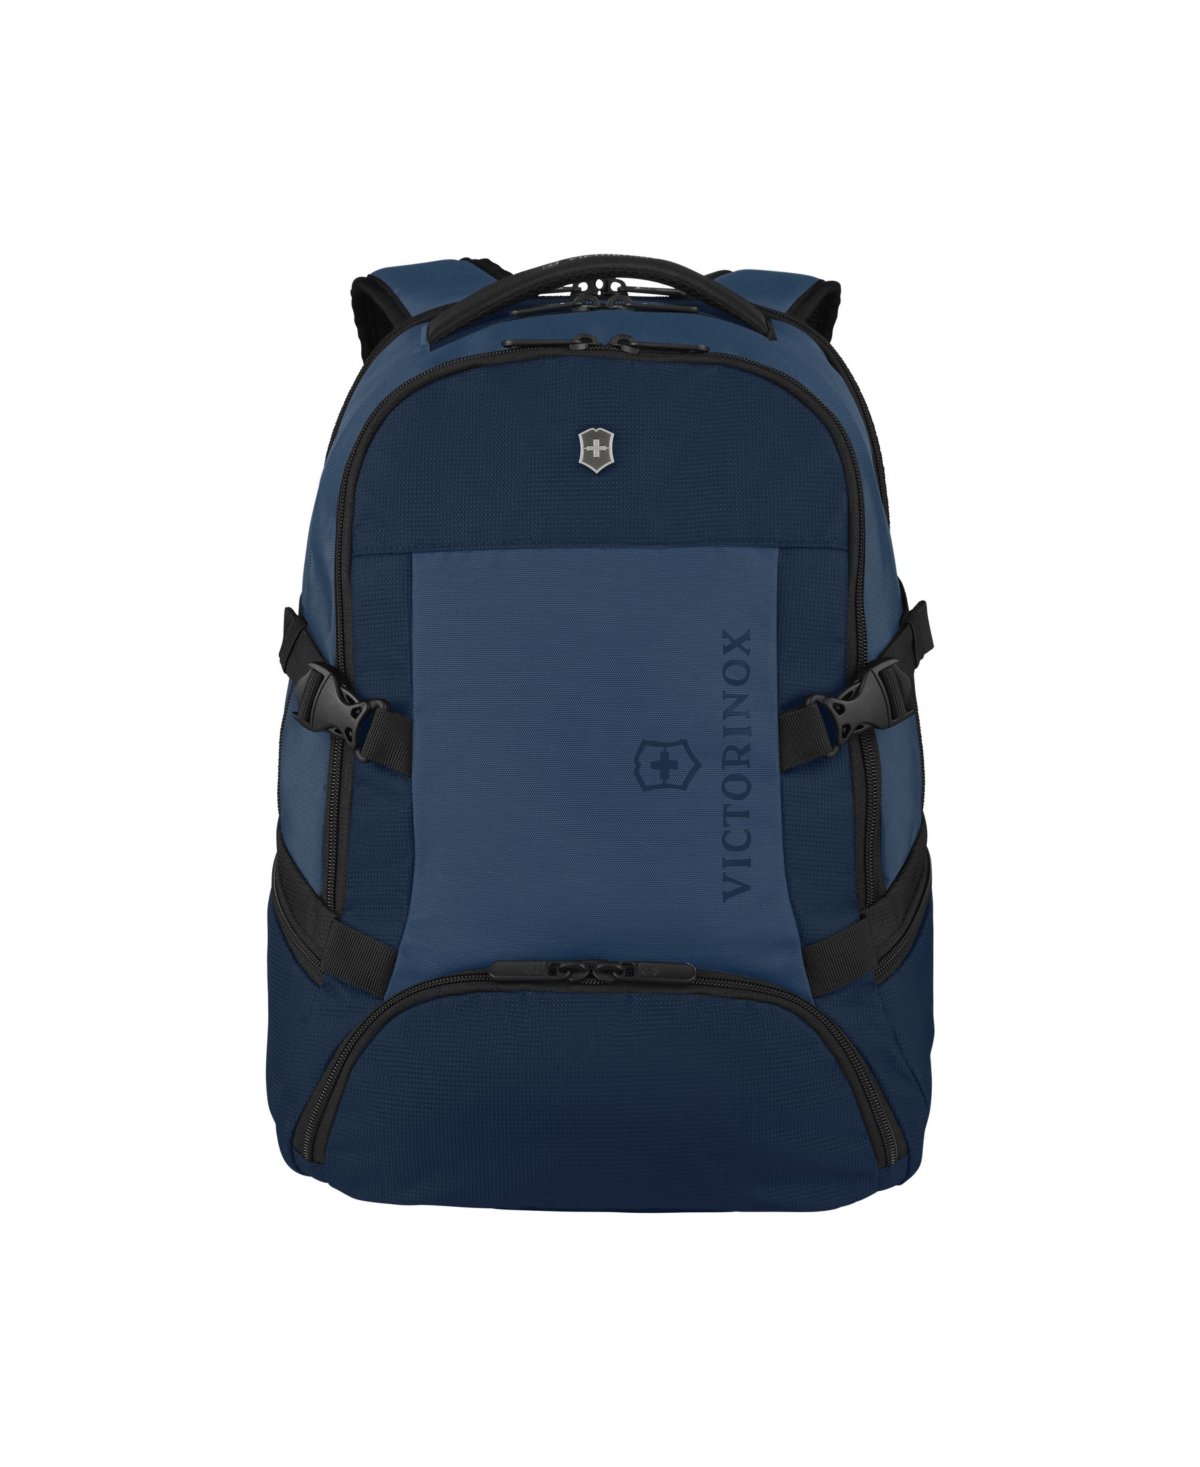 Vx Sport Evo Deluxe Laptop Backpack - Black